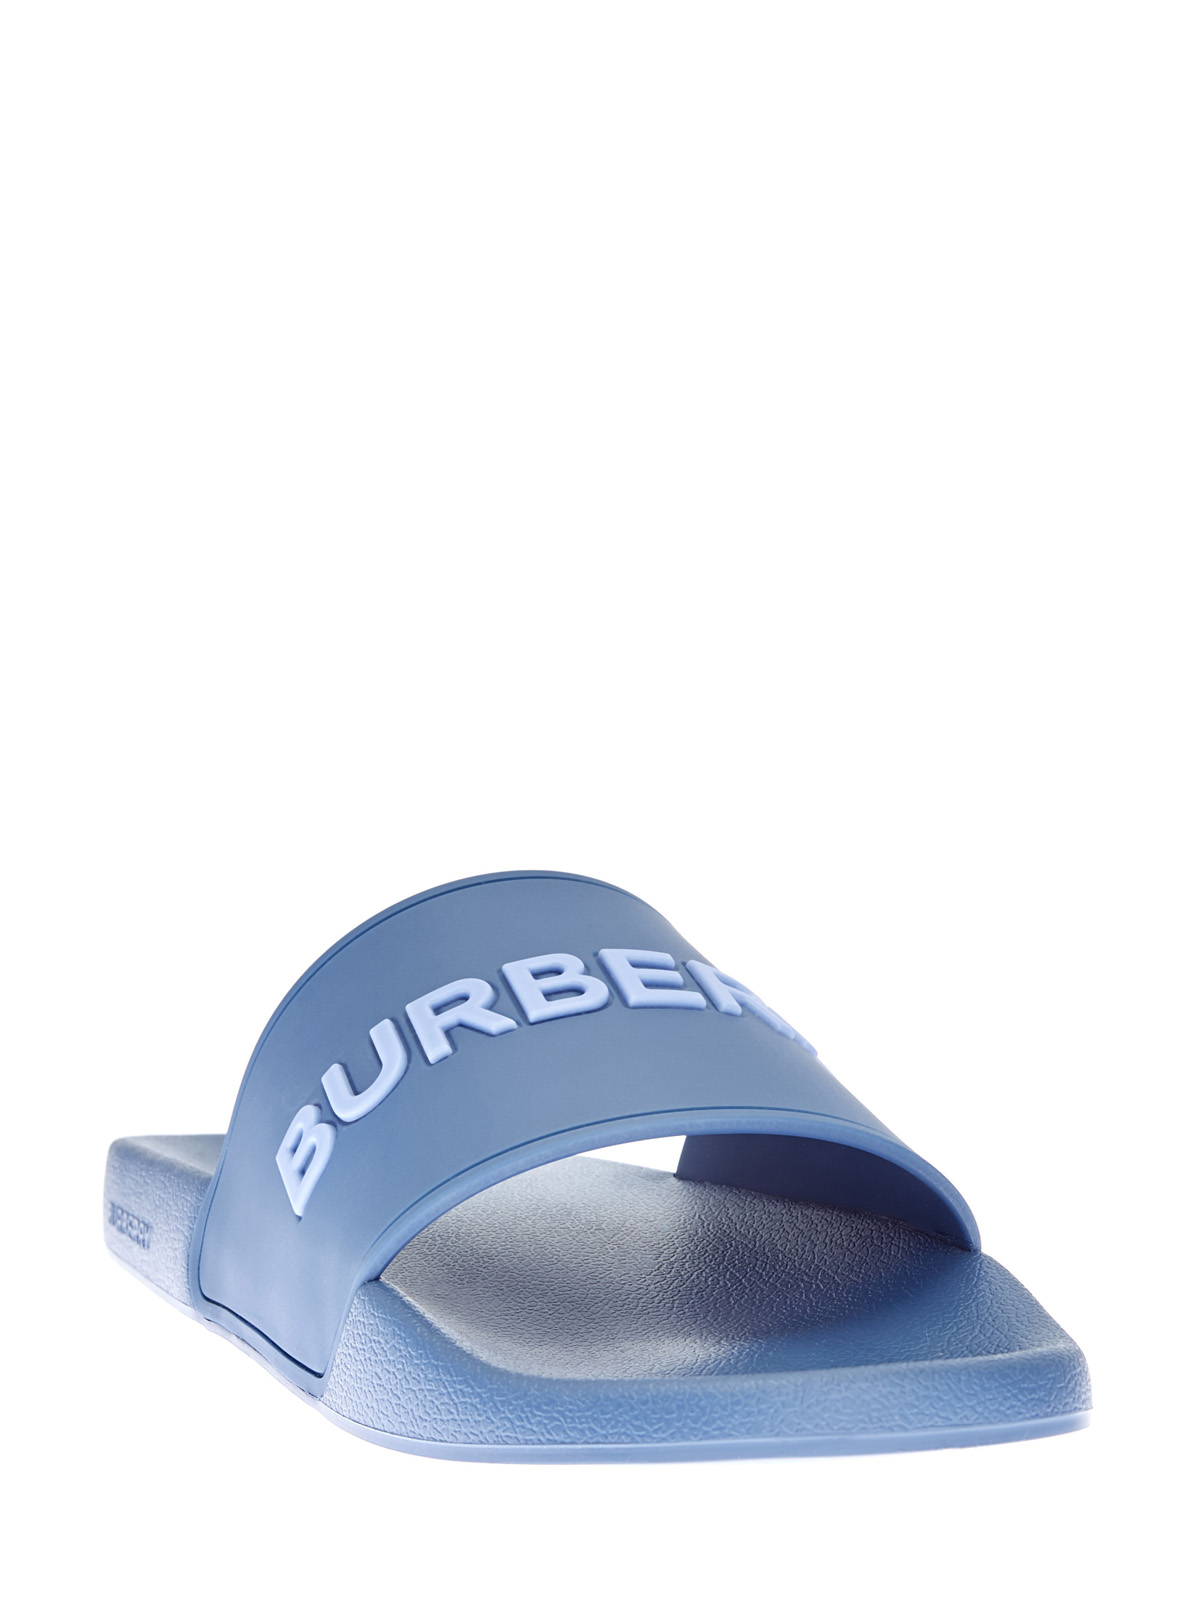 Шлепанцы из матового полимера с объемным логотипом BURBERRY, цвет синий, размер 6;7;8;9;10;11;12 - фото 3